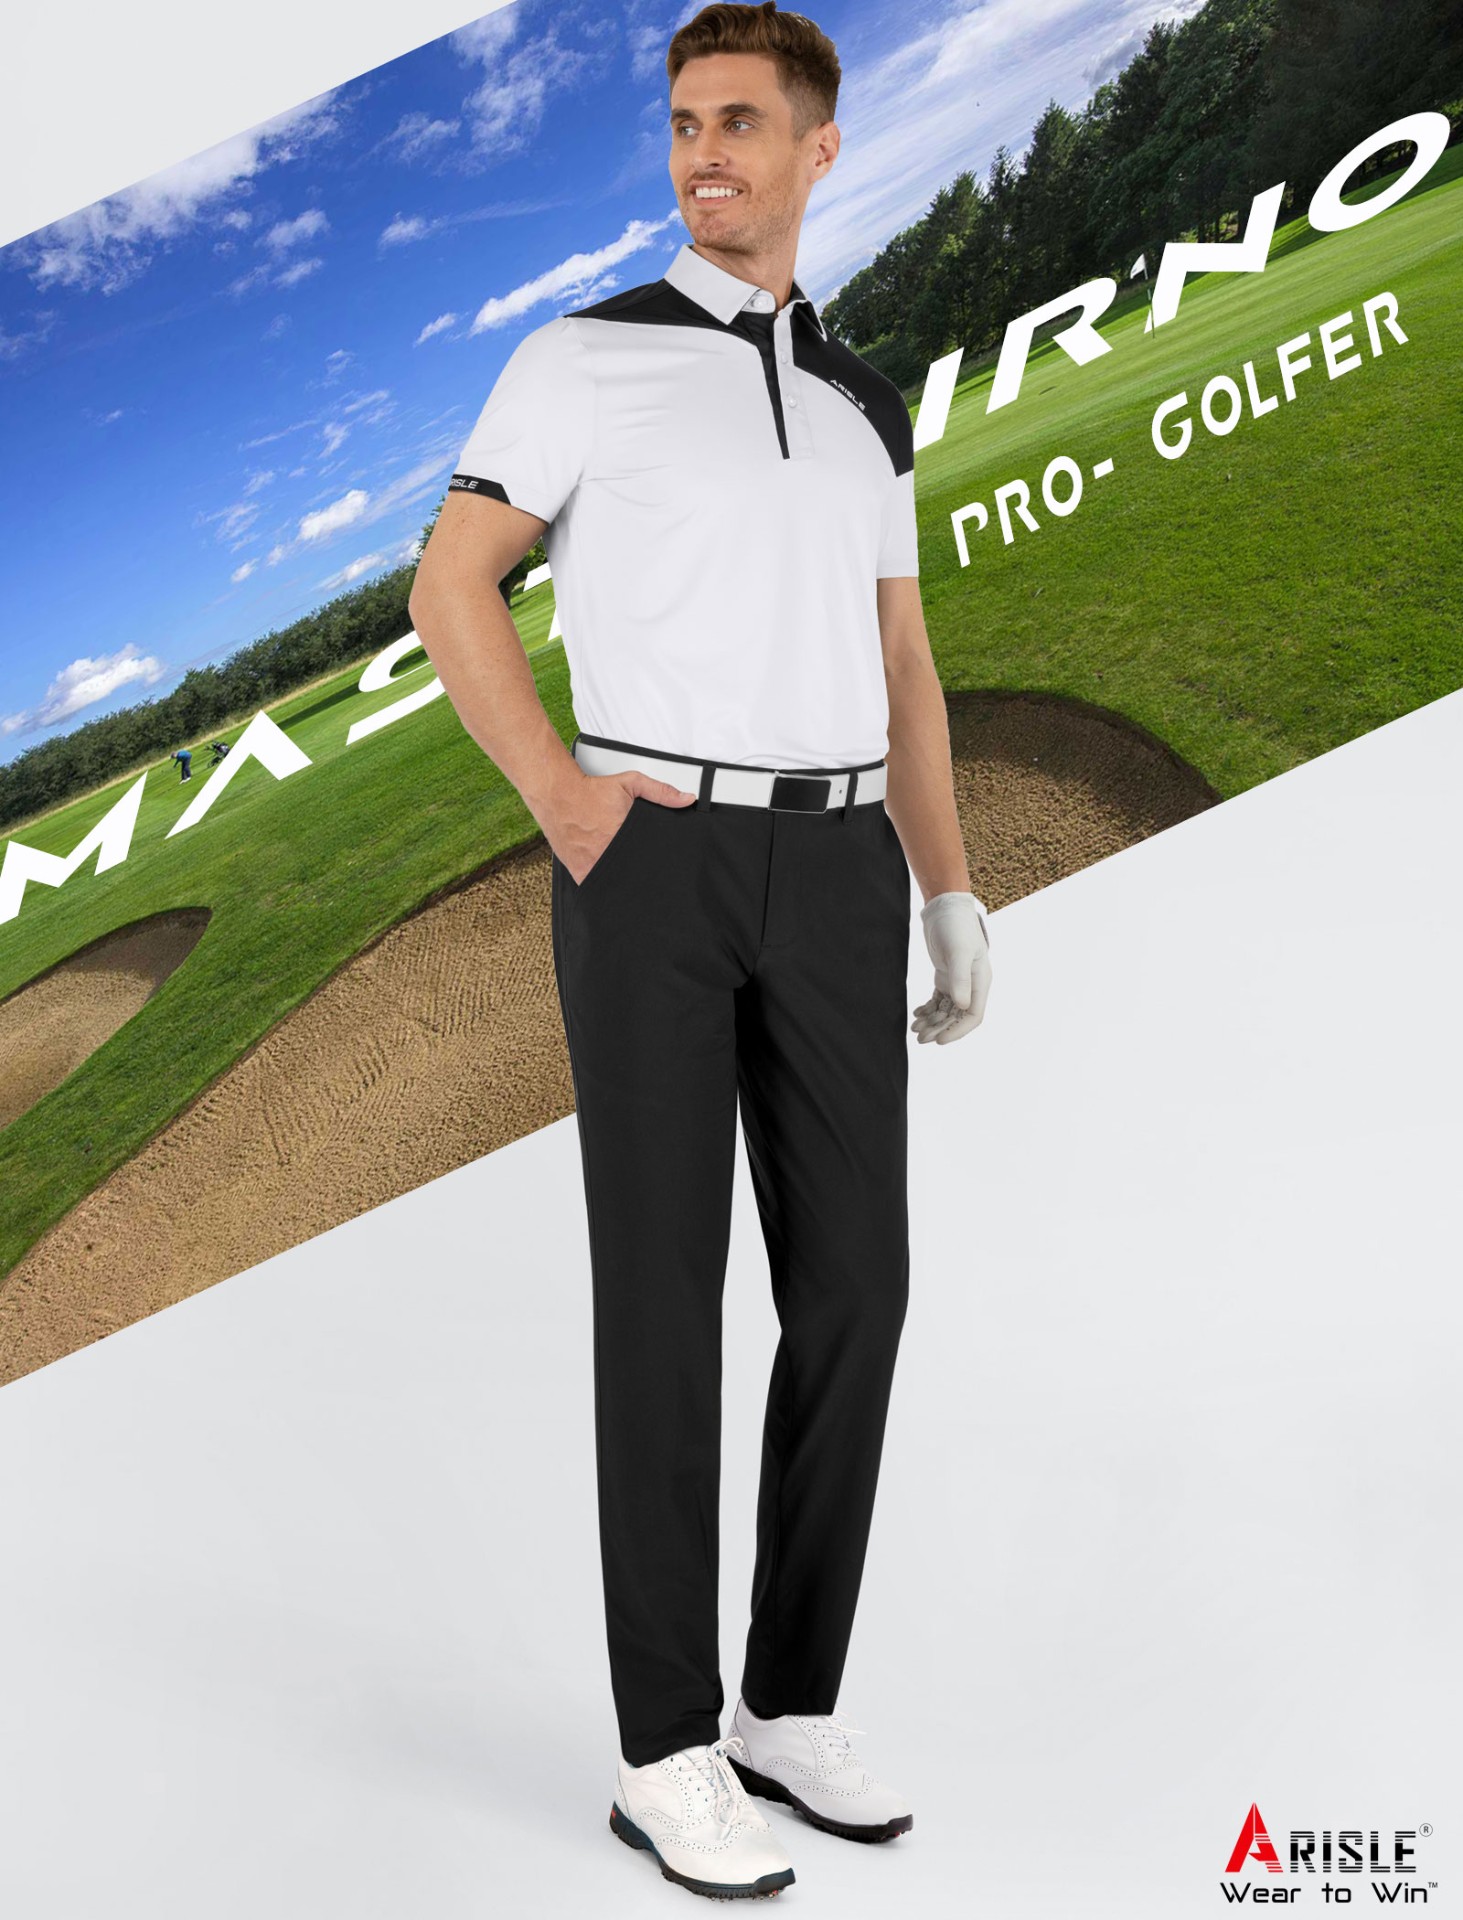 Áo Polo Golf ARISLE Mastourno White/Black